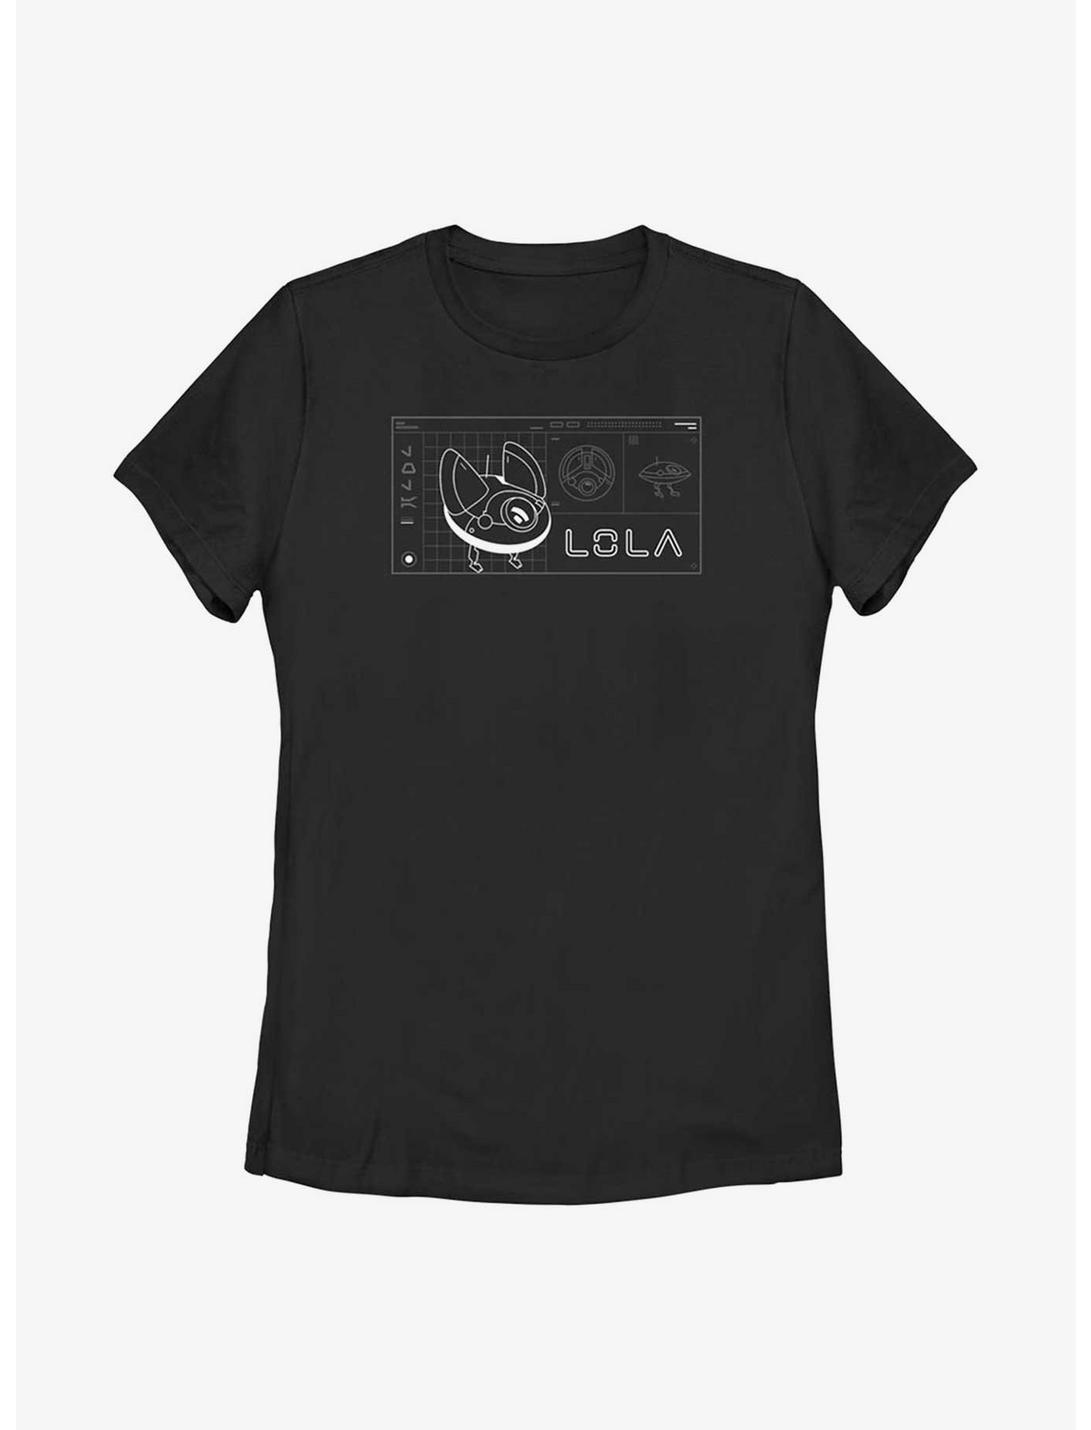 Star Wars Obi-Wan Kenobi Lola Droid Schematic Womens T-Shirt, BLACK, hi-res